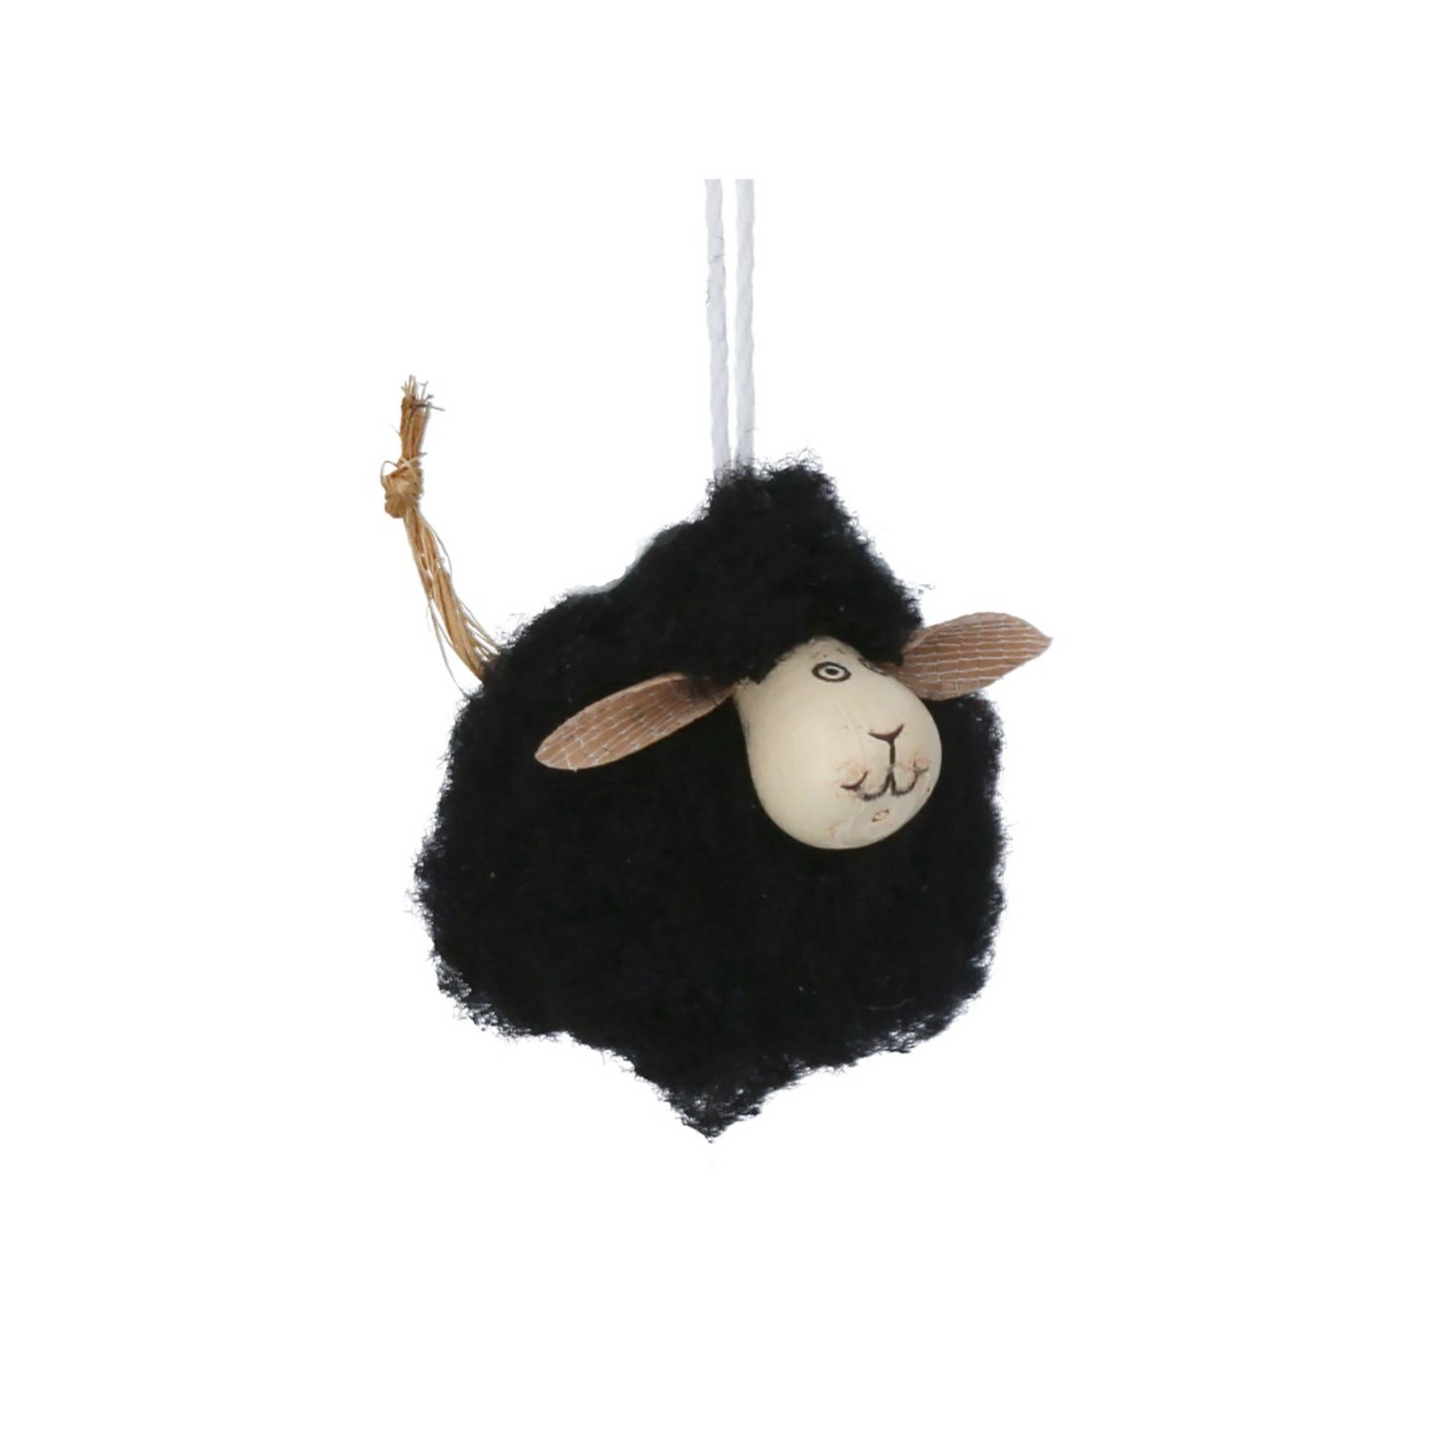 Wool Dec 4cm - Black Mini Sheep